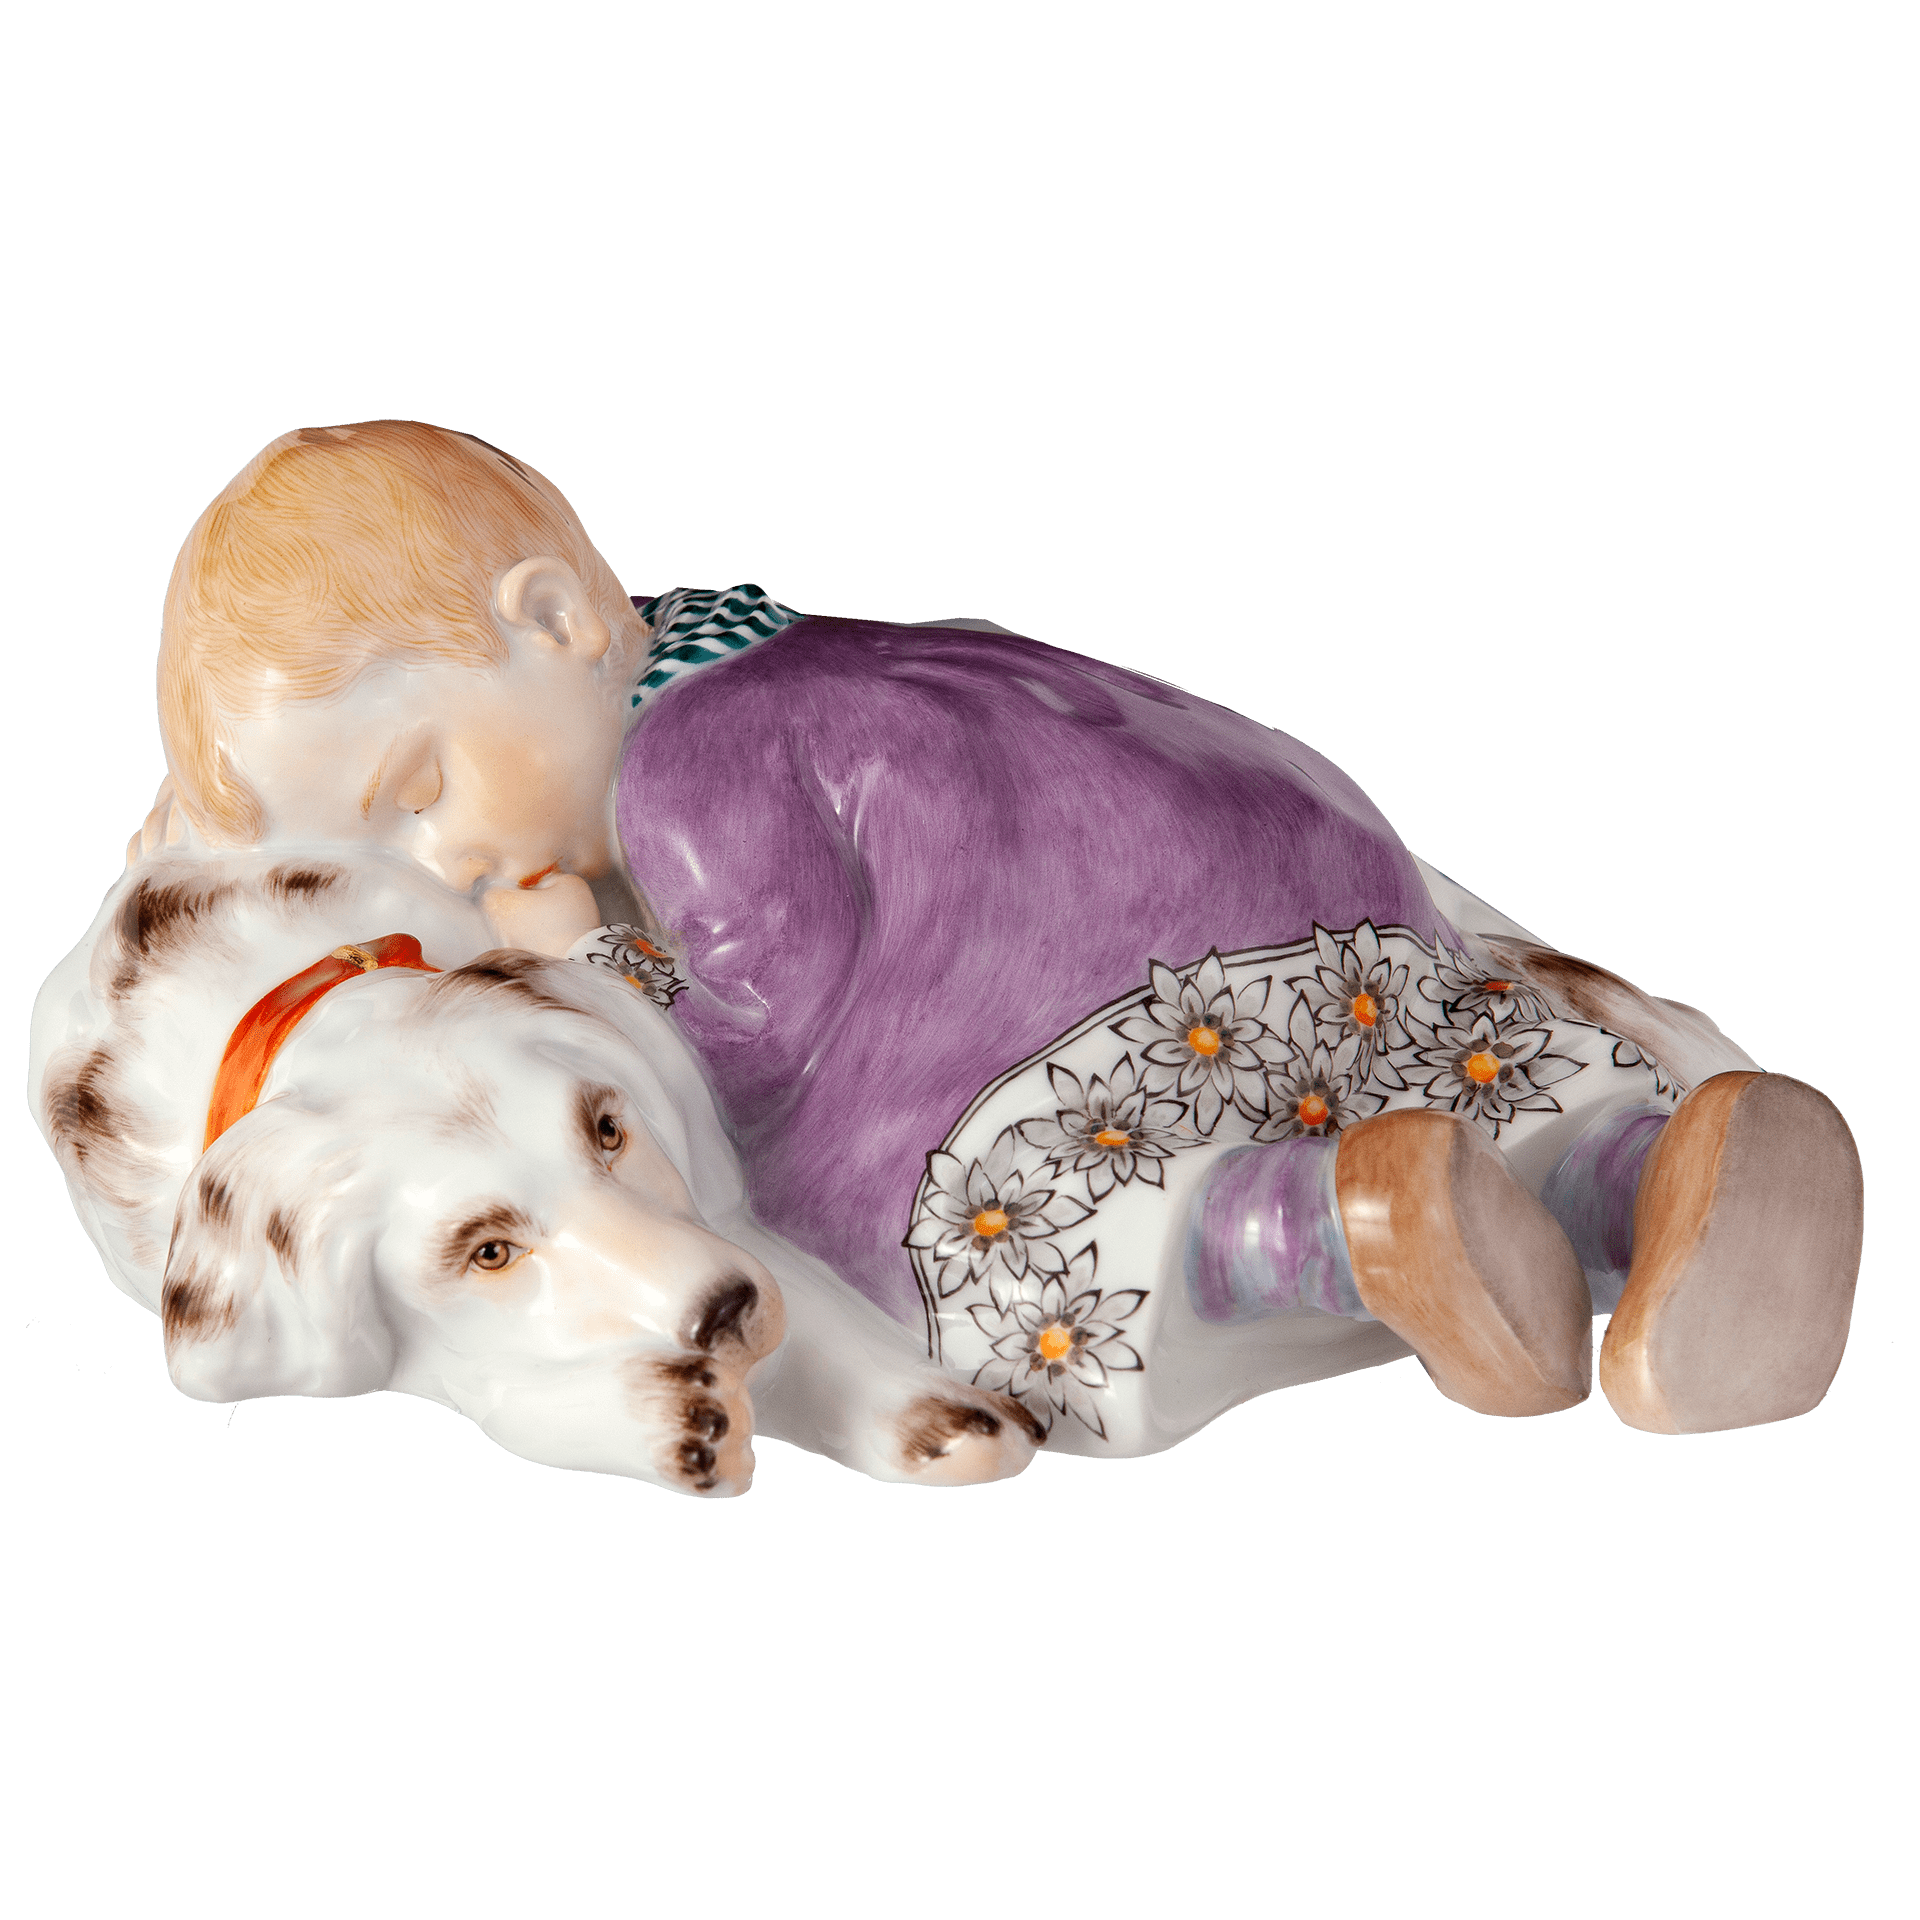 人形「眠る子供と犬」 73368/90A382